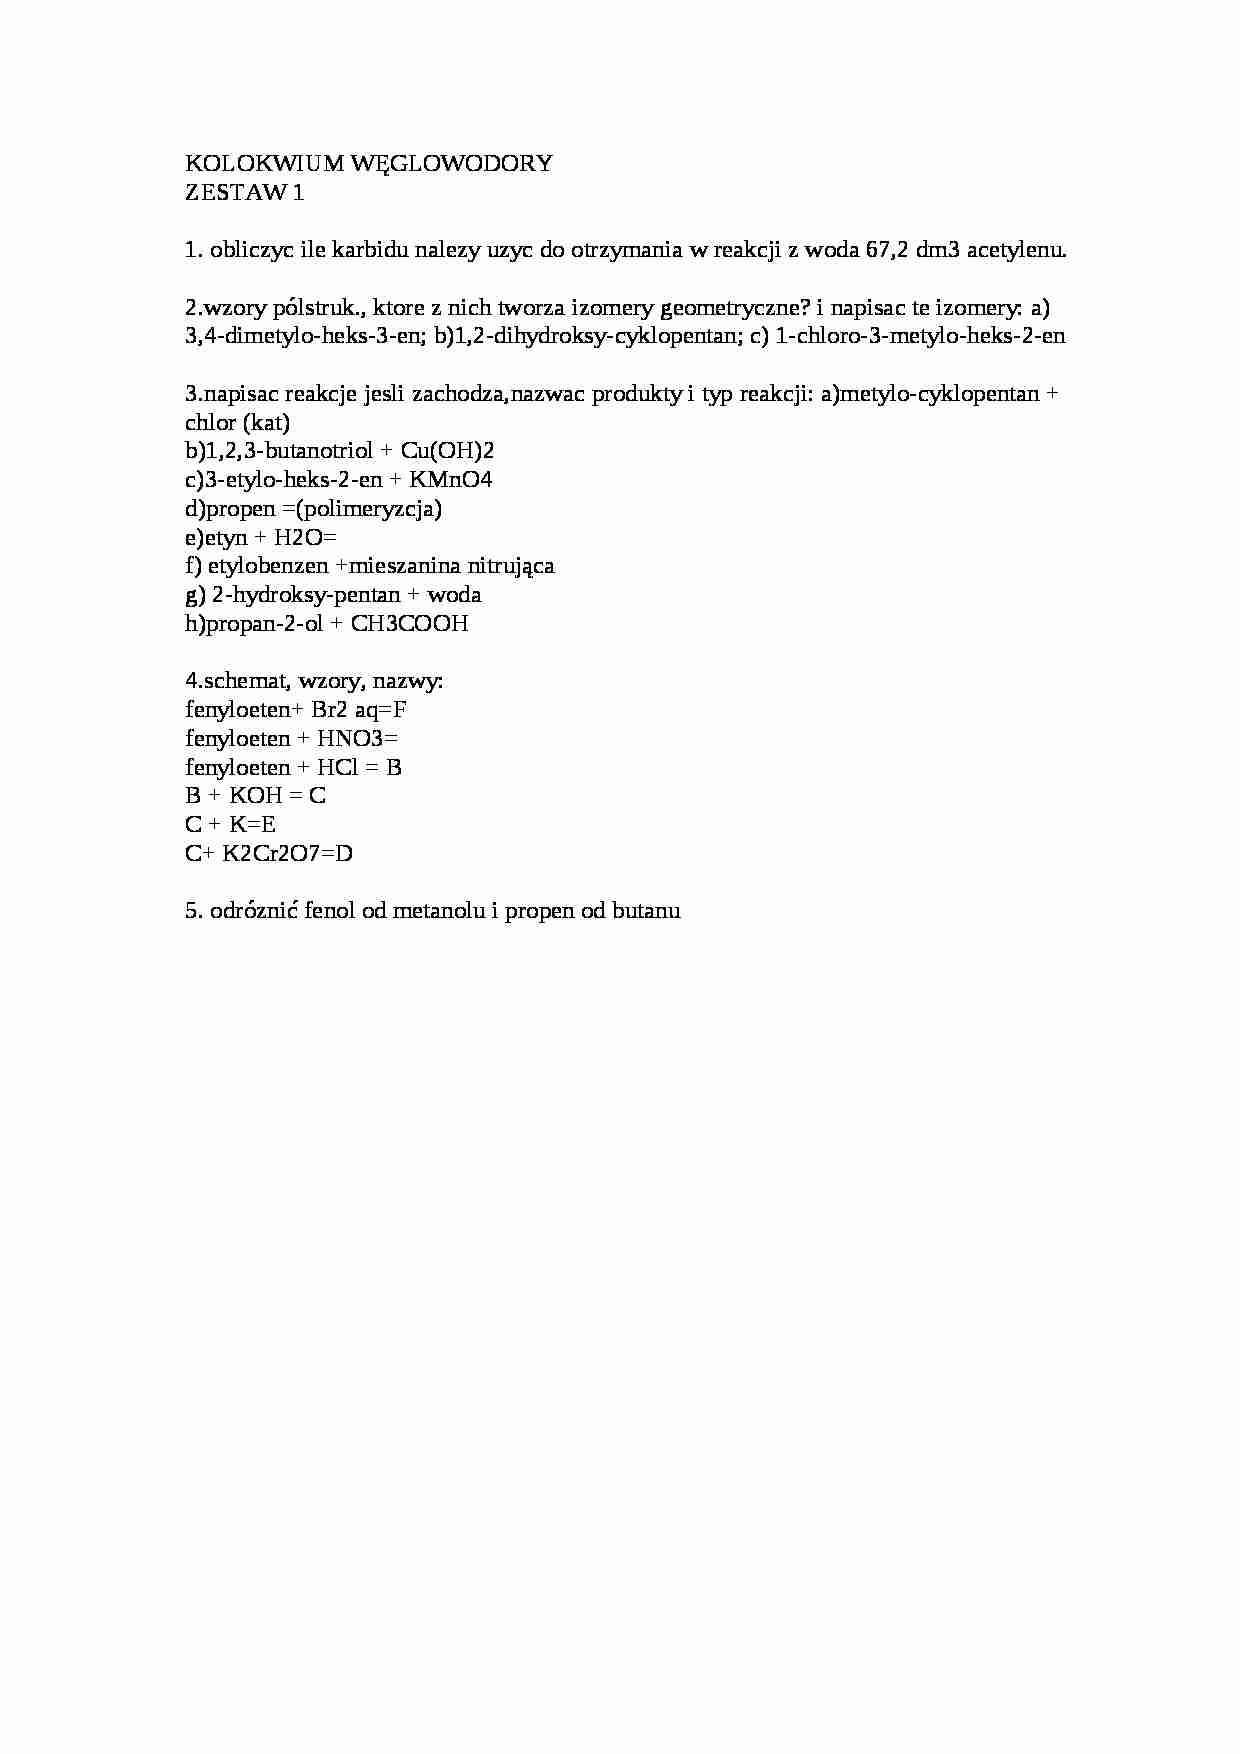 Kolokwium węglowodory (sem II) - strona 1